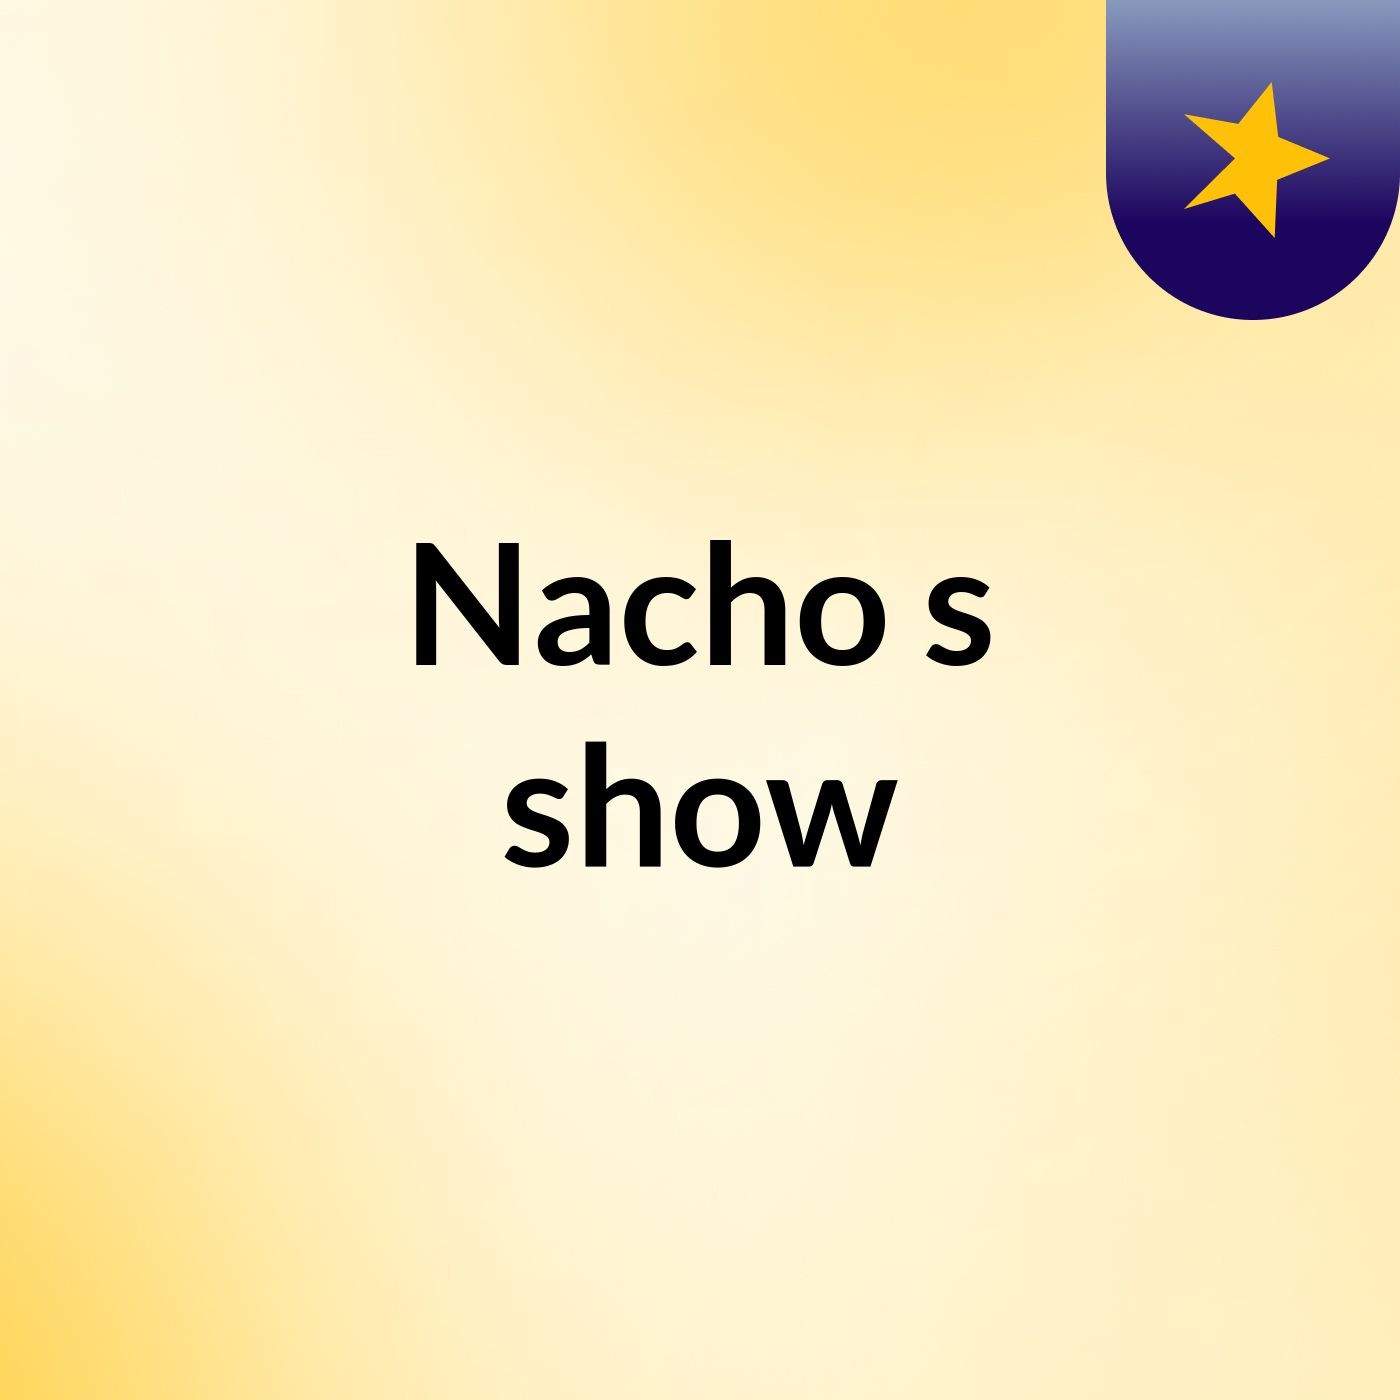 Nacho's show